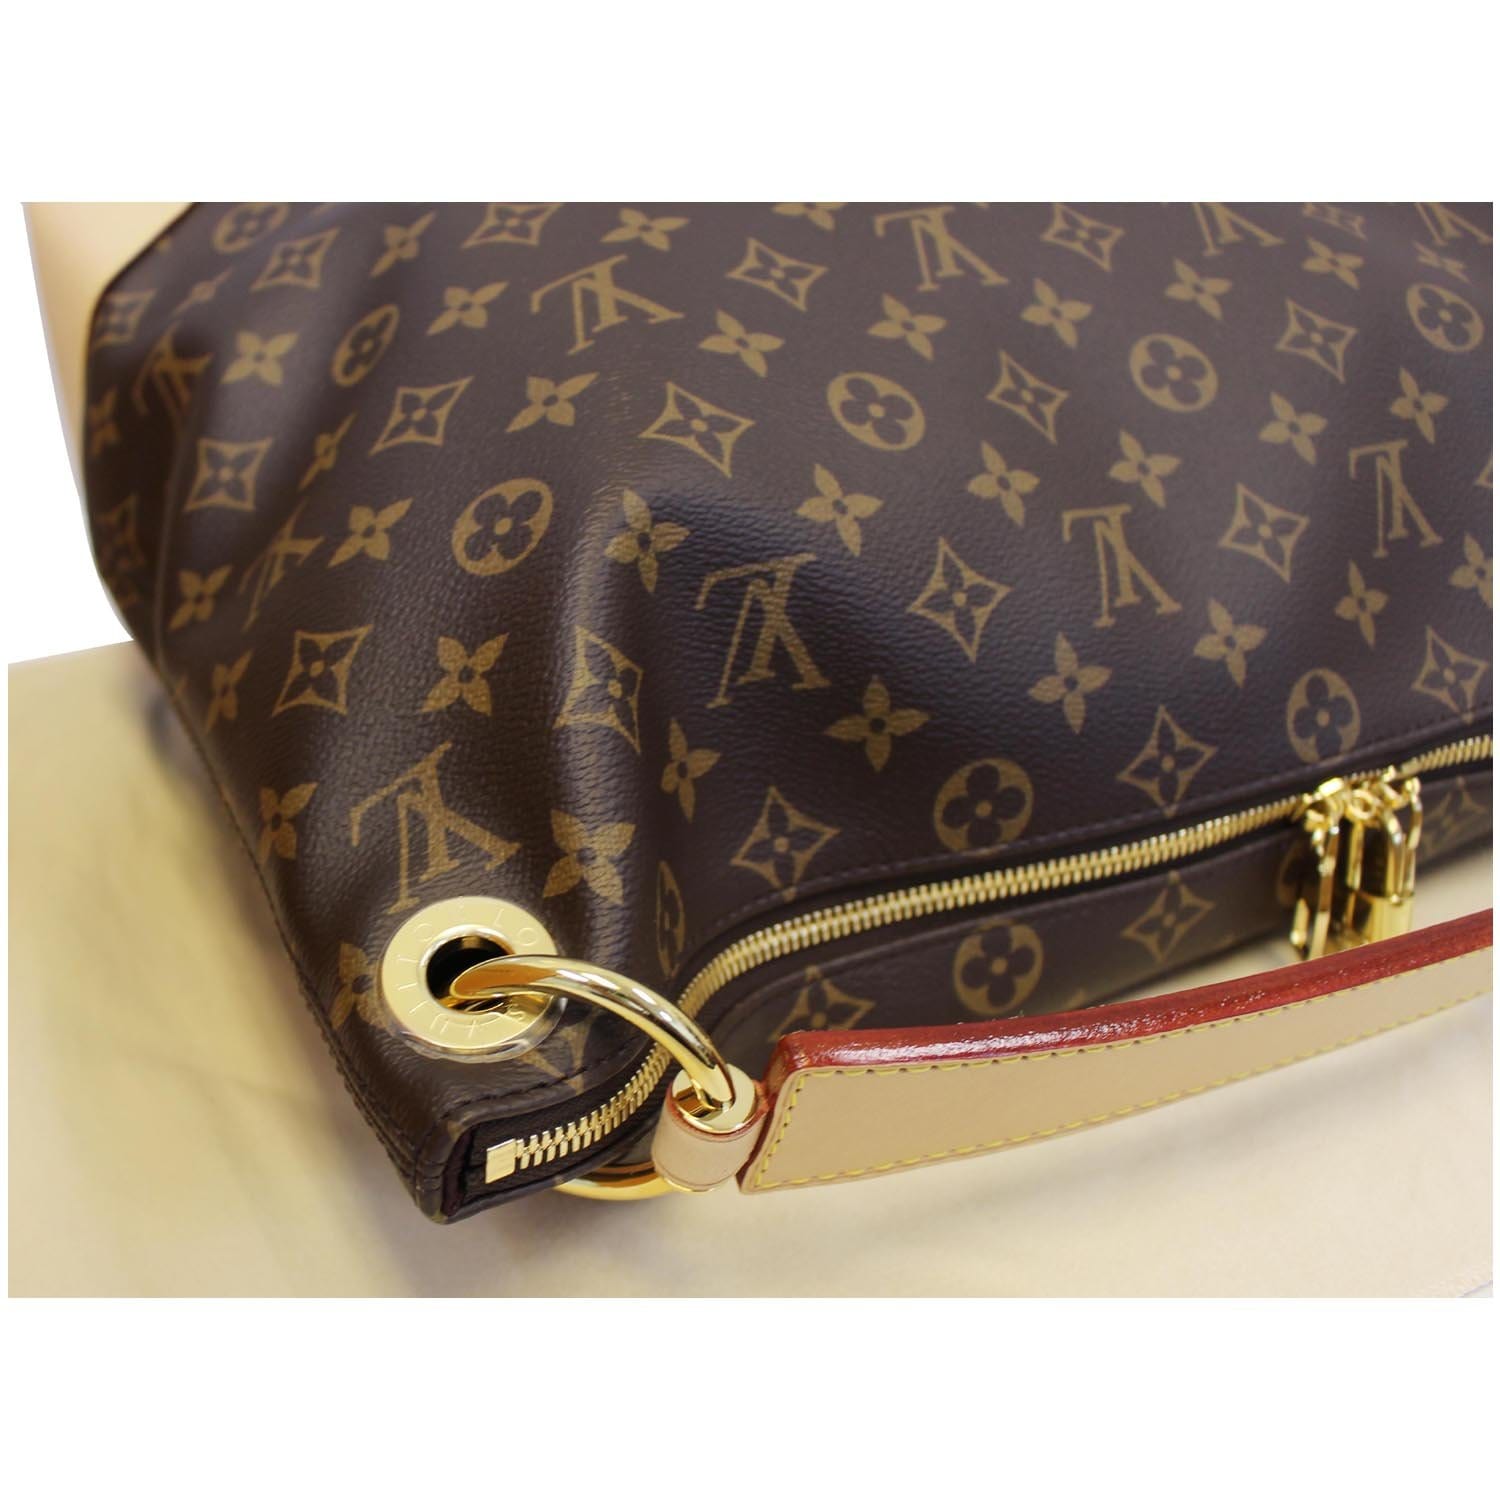 Louis Vuitton Berri MM Hobo Shoulder Bag (M41625)